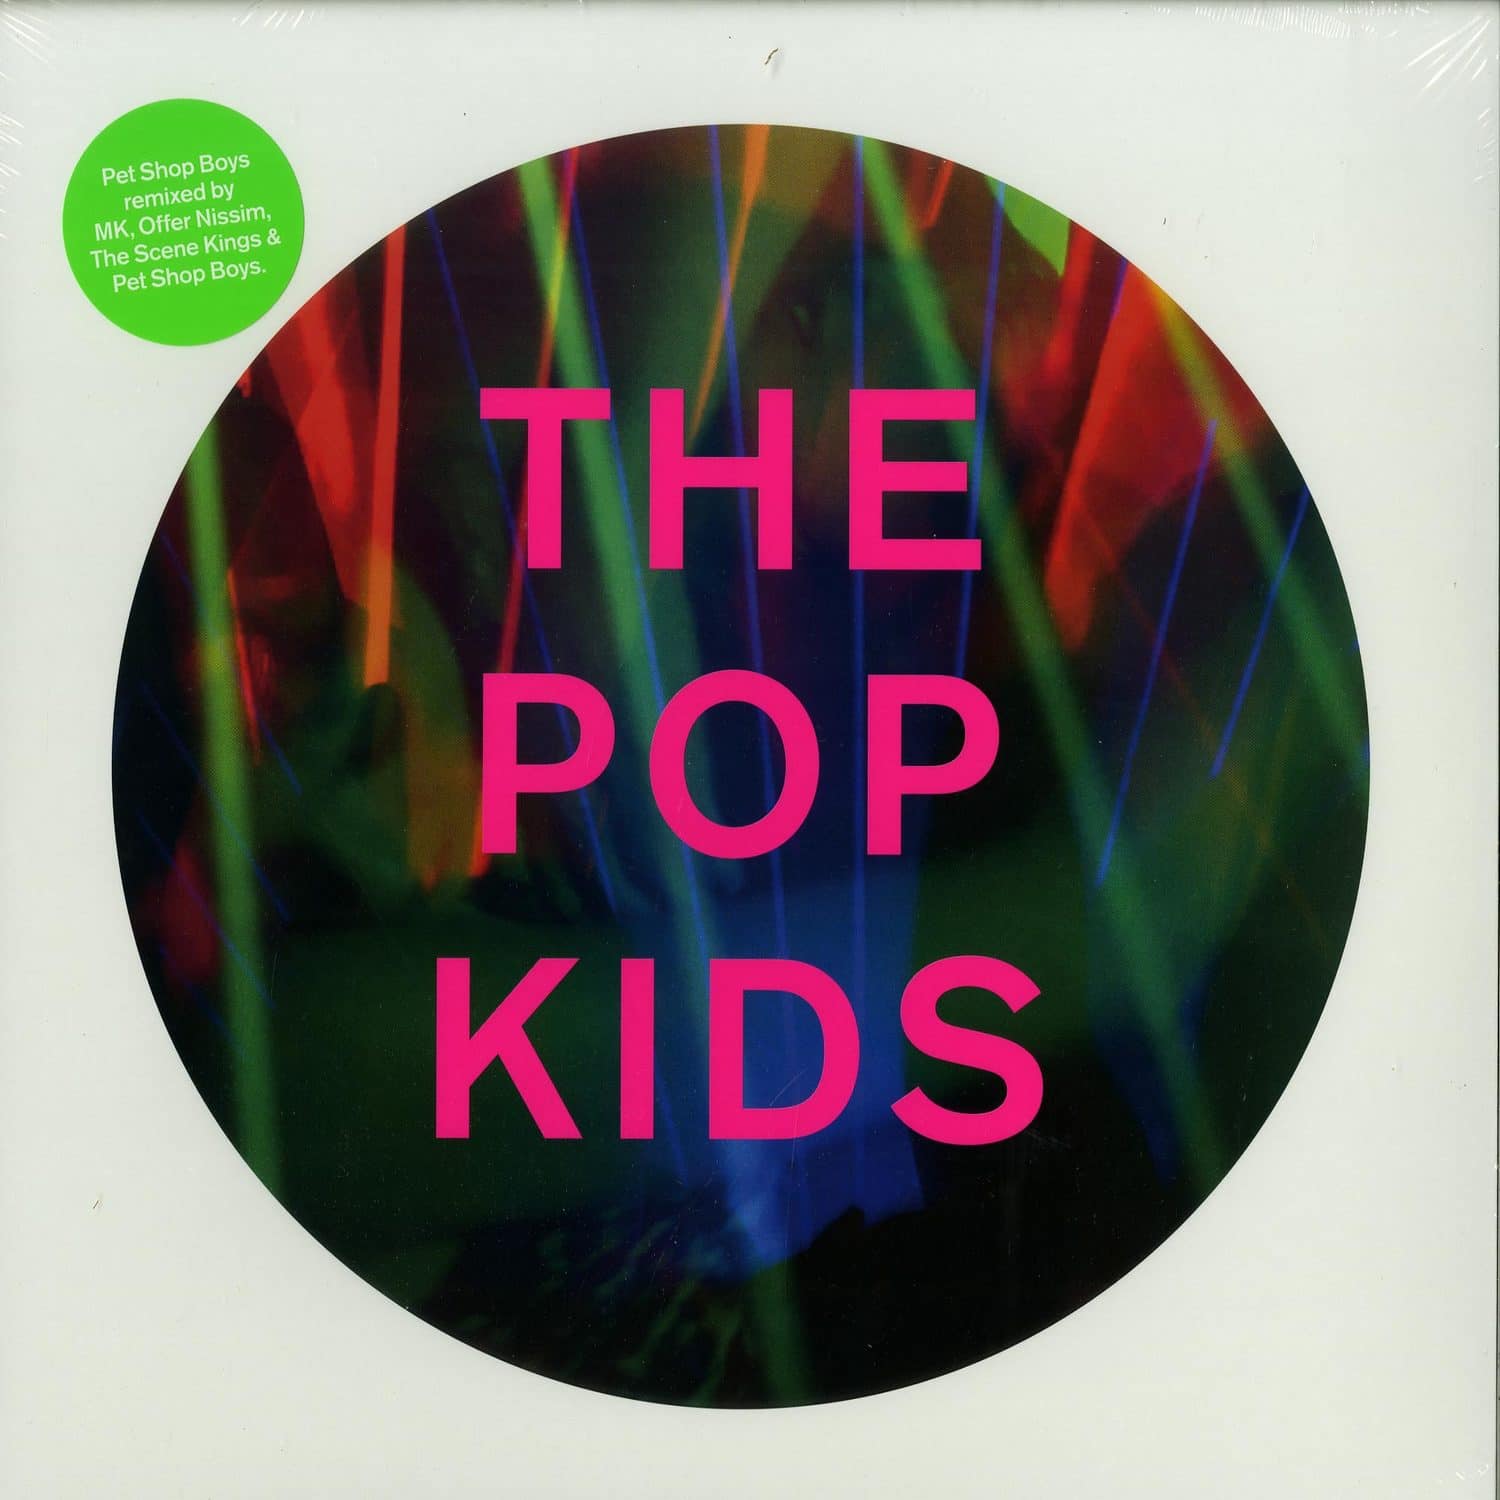 Pet Shop Boys - THE POP KIDS 